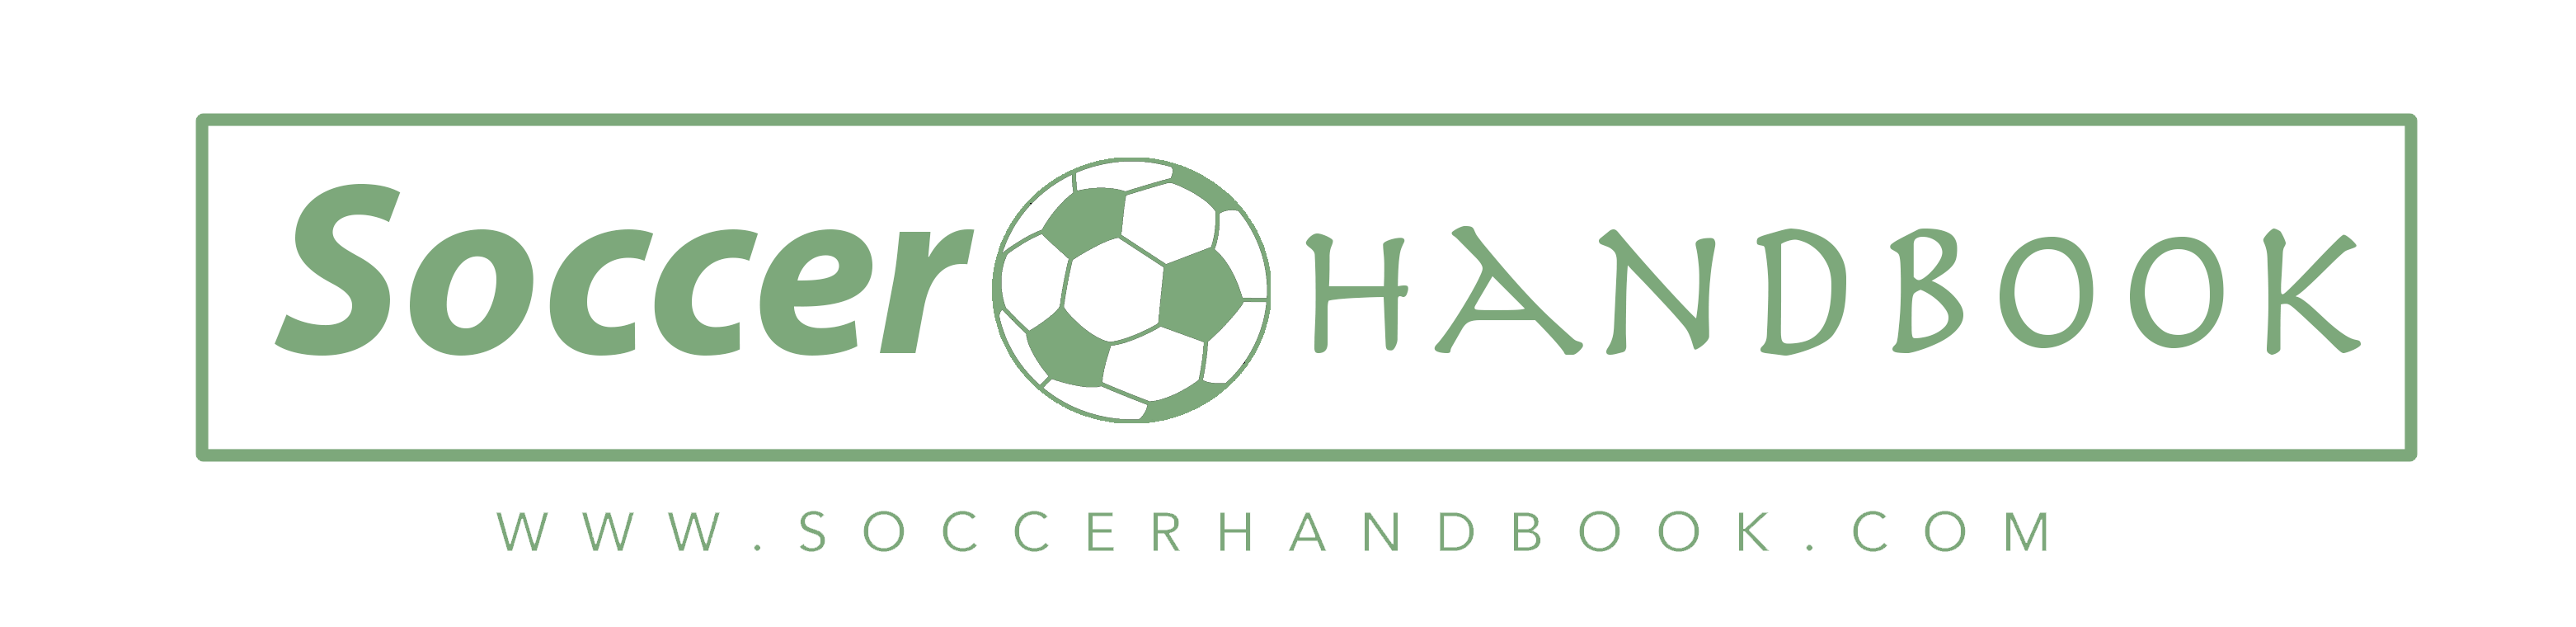 soccerhandbook